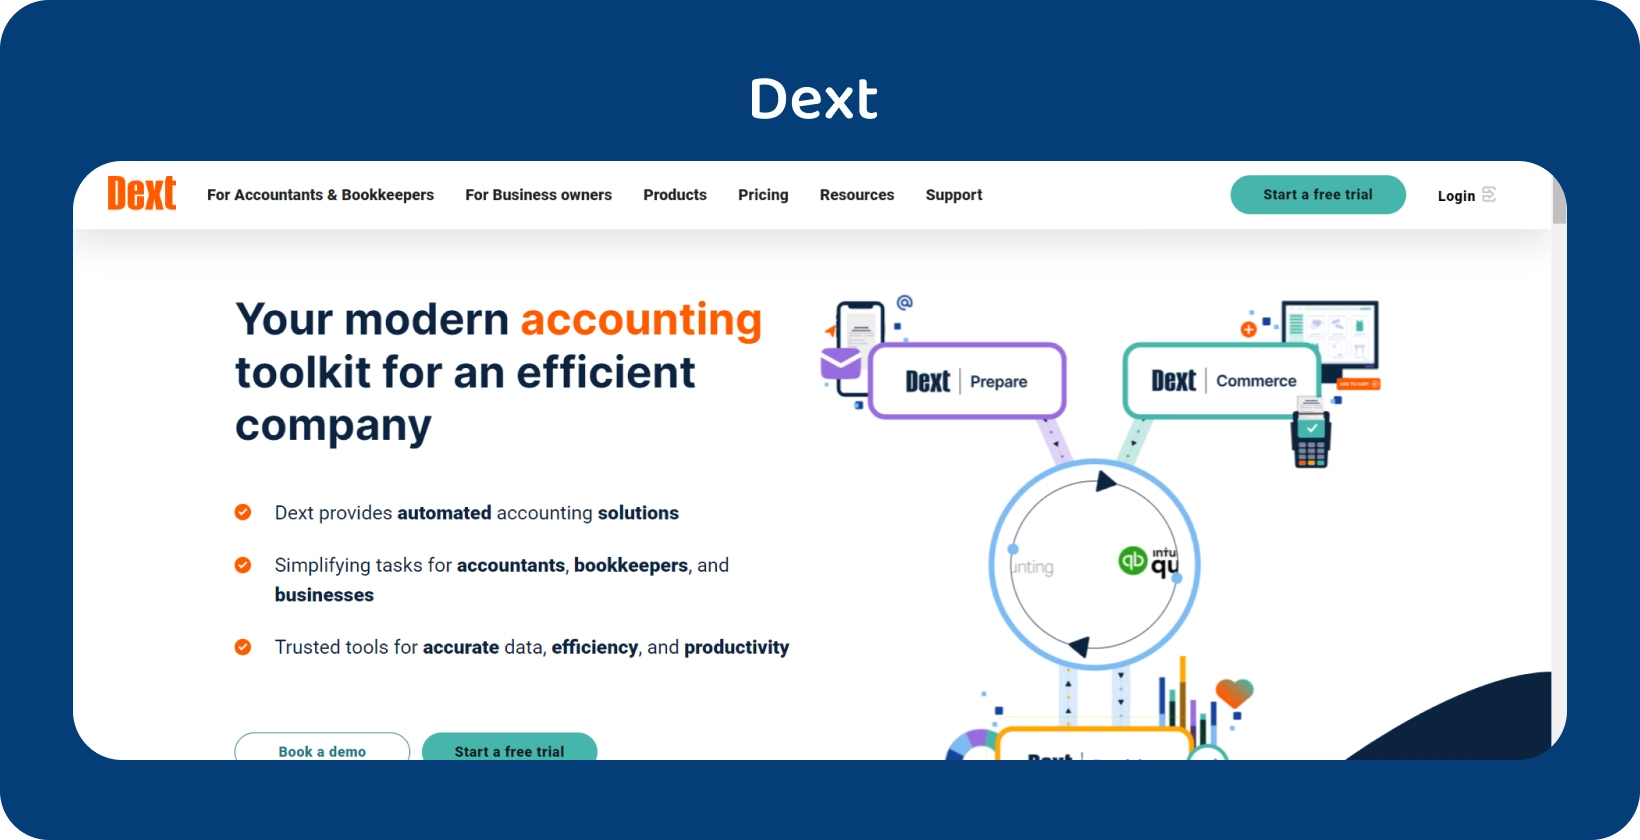 Передовий інтерфейс бухгалтерського інструментарію Dext, підкреслює автоматизацію для професіоналів у сфері бухгалтерського обліку.